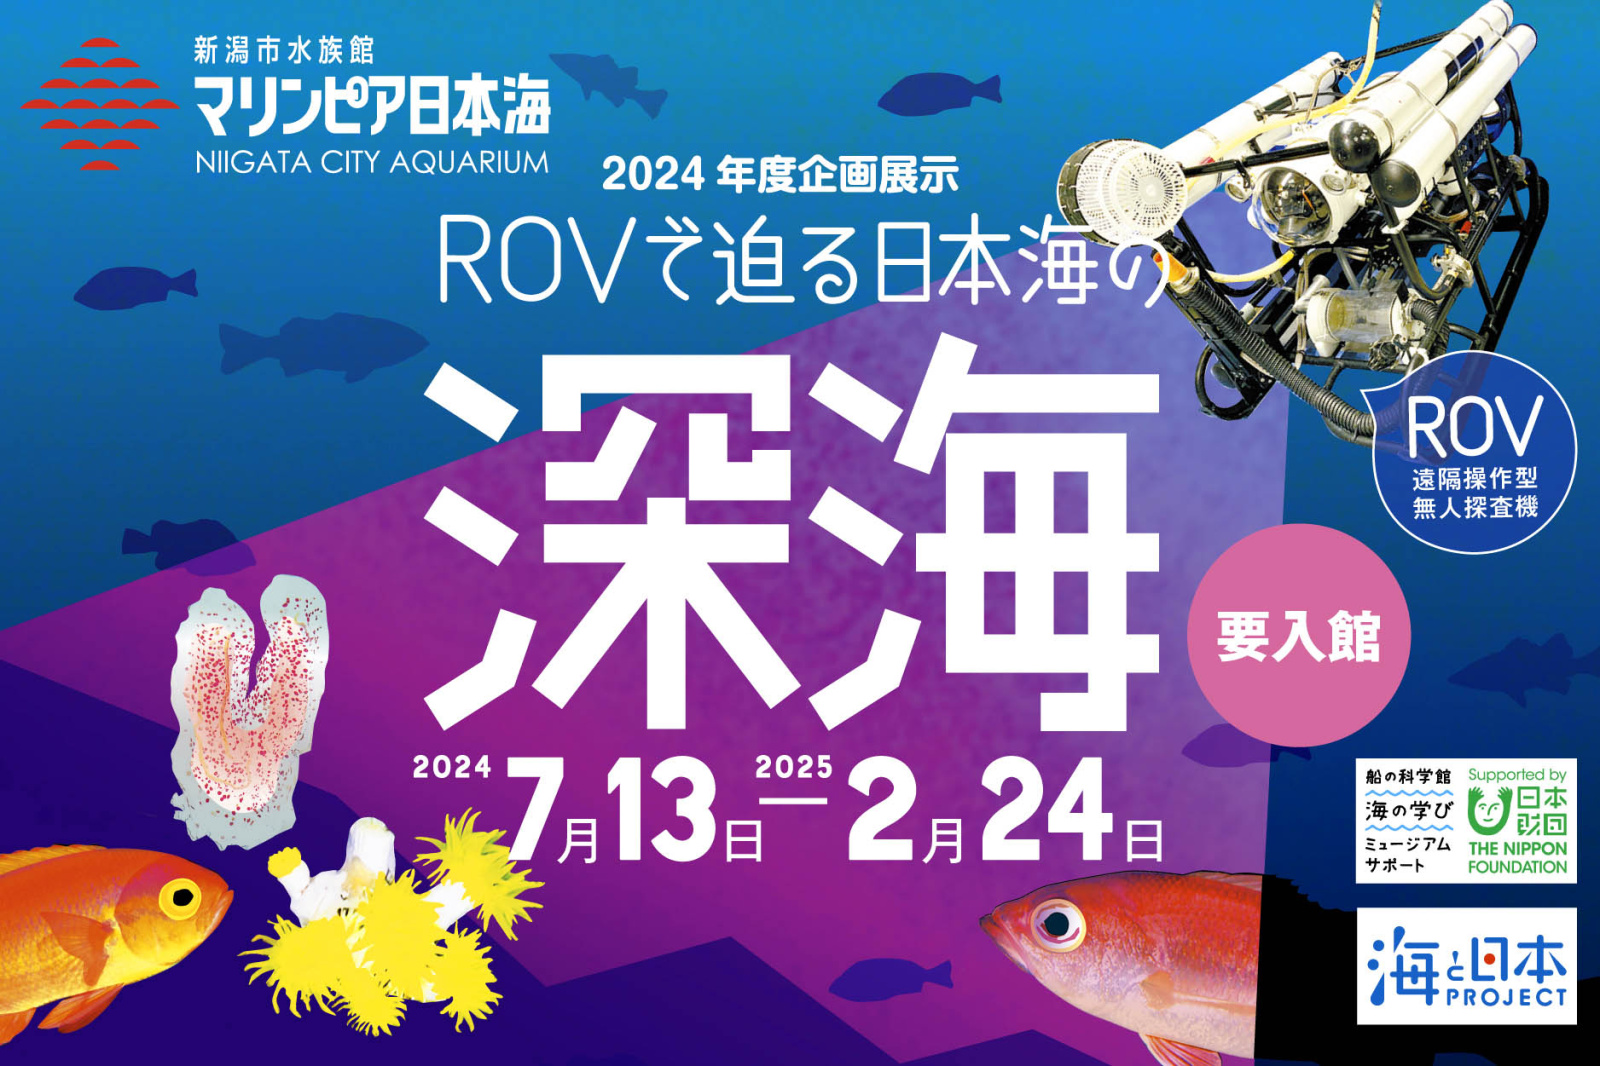 企画展示「ROVで迫る 日本海の深海」